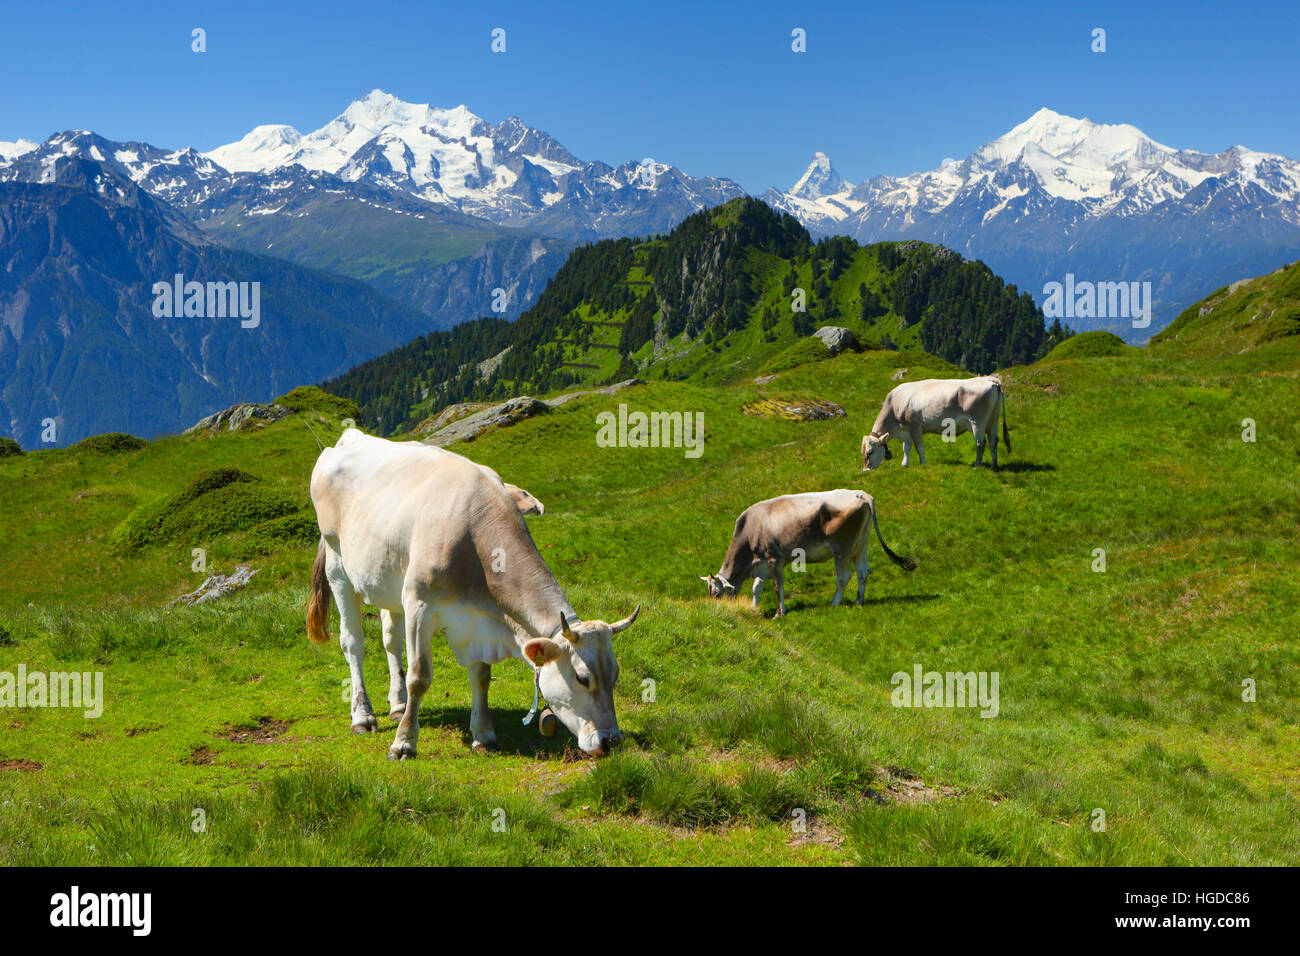 Alpes Suizos, Mischabel, Cervino, Weisshorn, Valais, Suiza Foto de stock